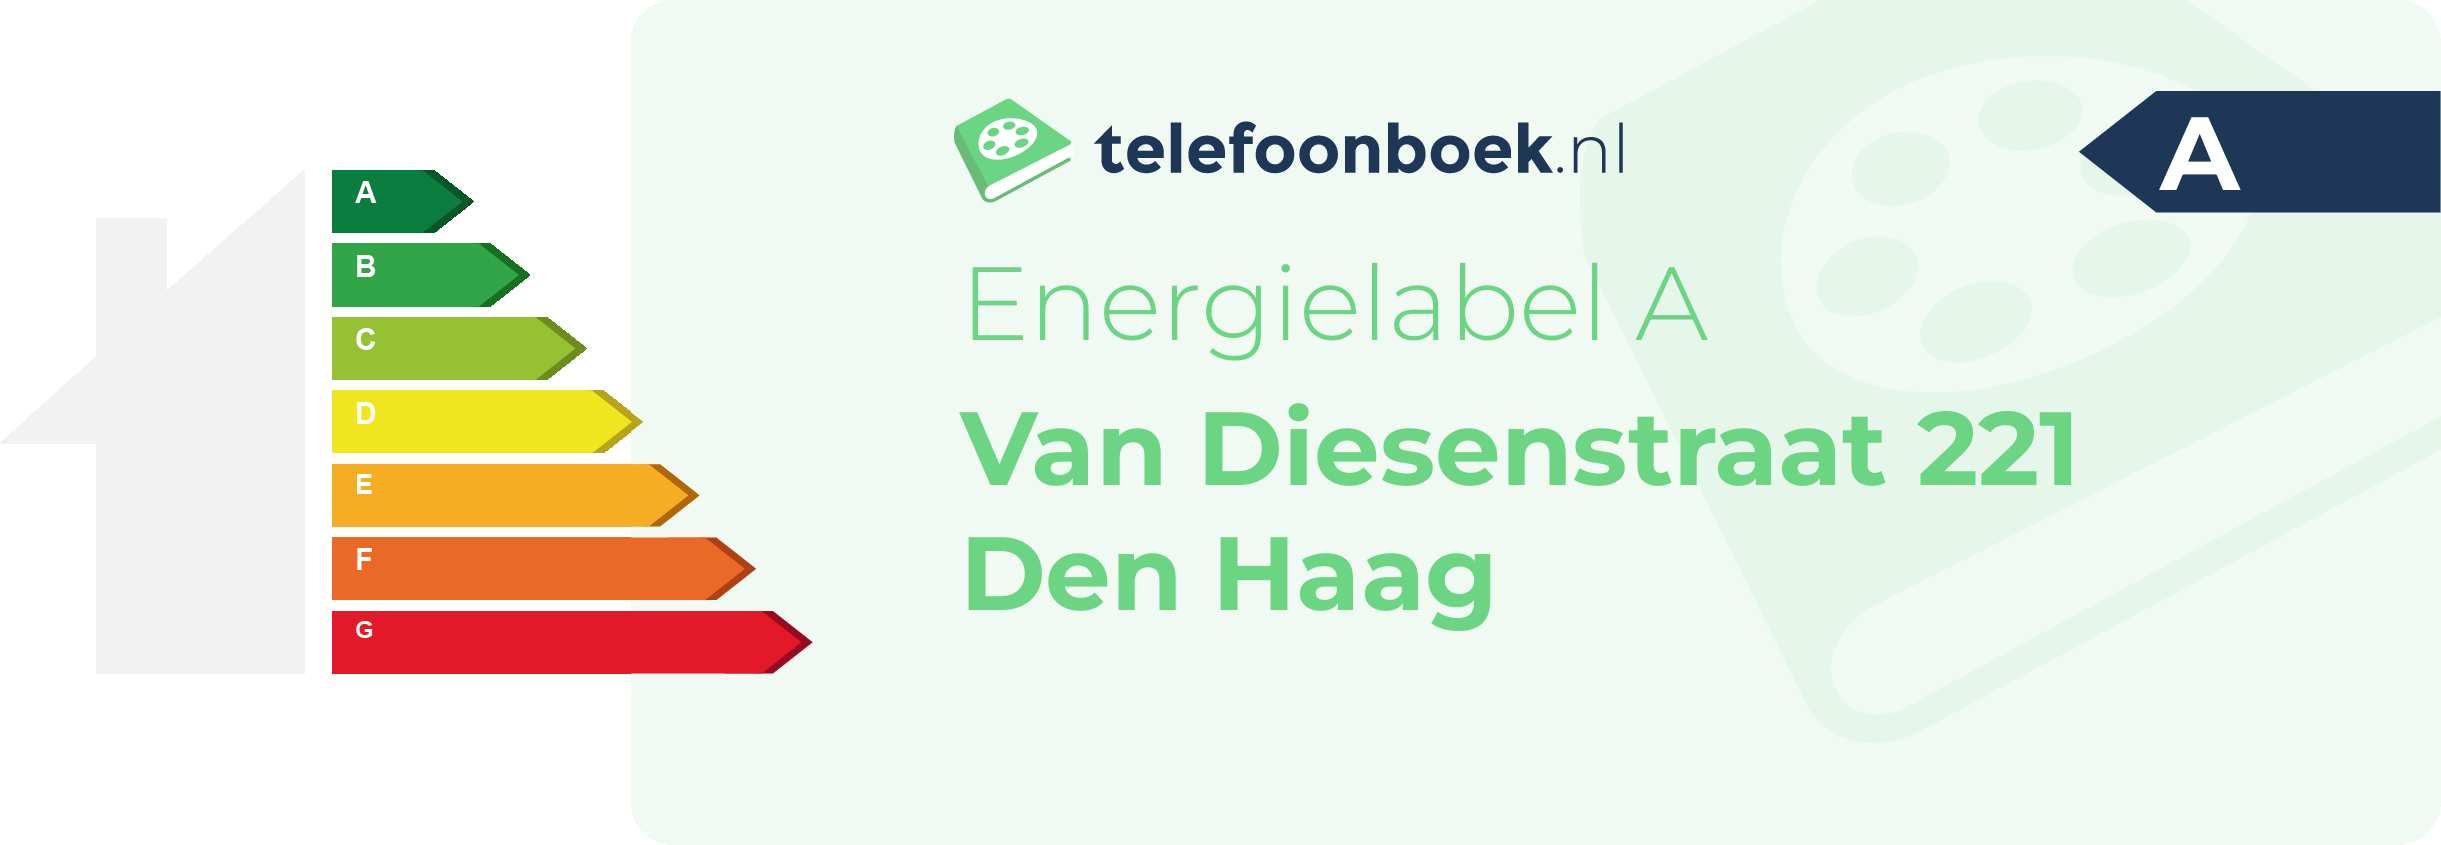 Energielabel Van Diesenstraat 221 Den Haag